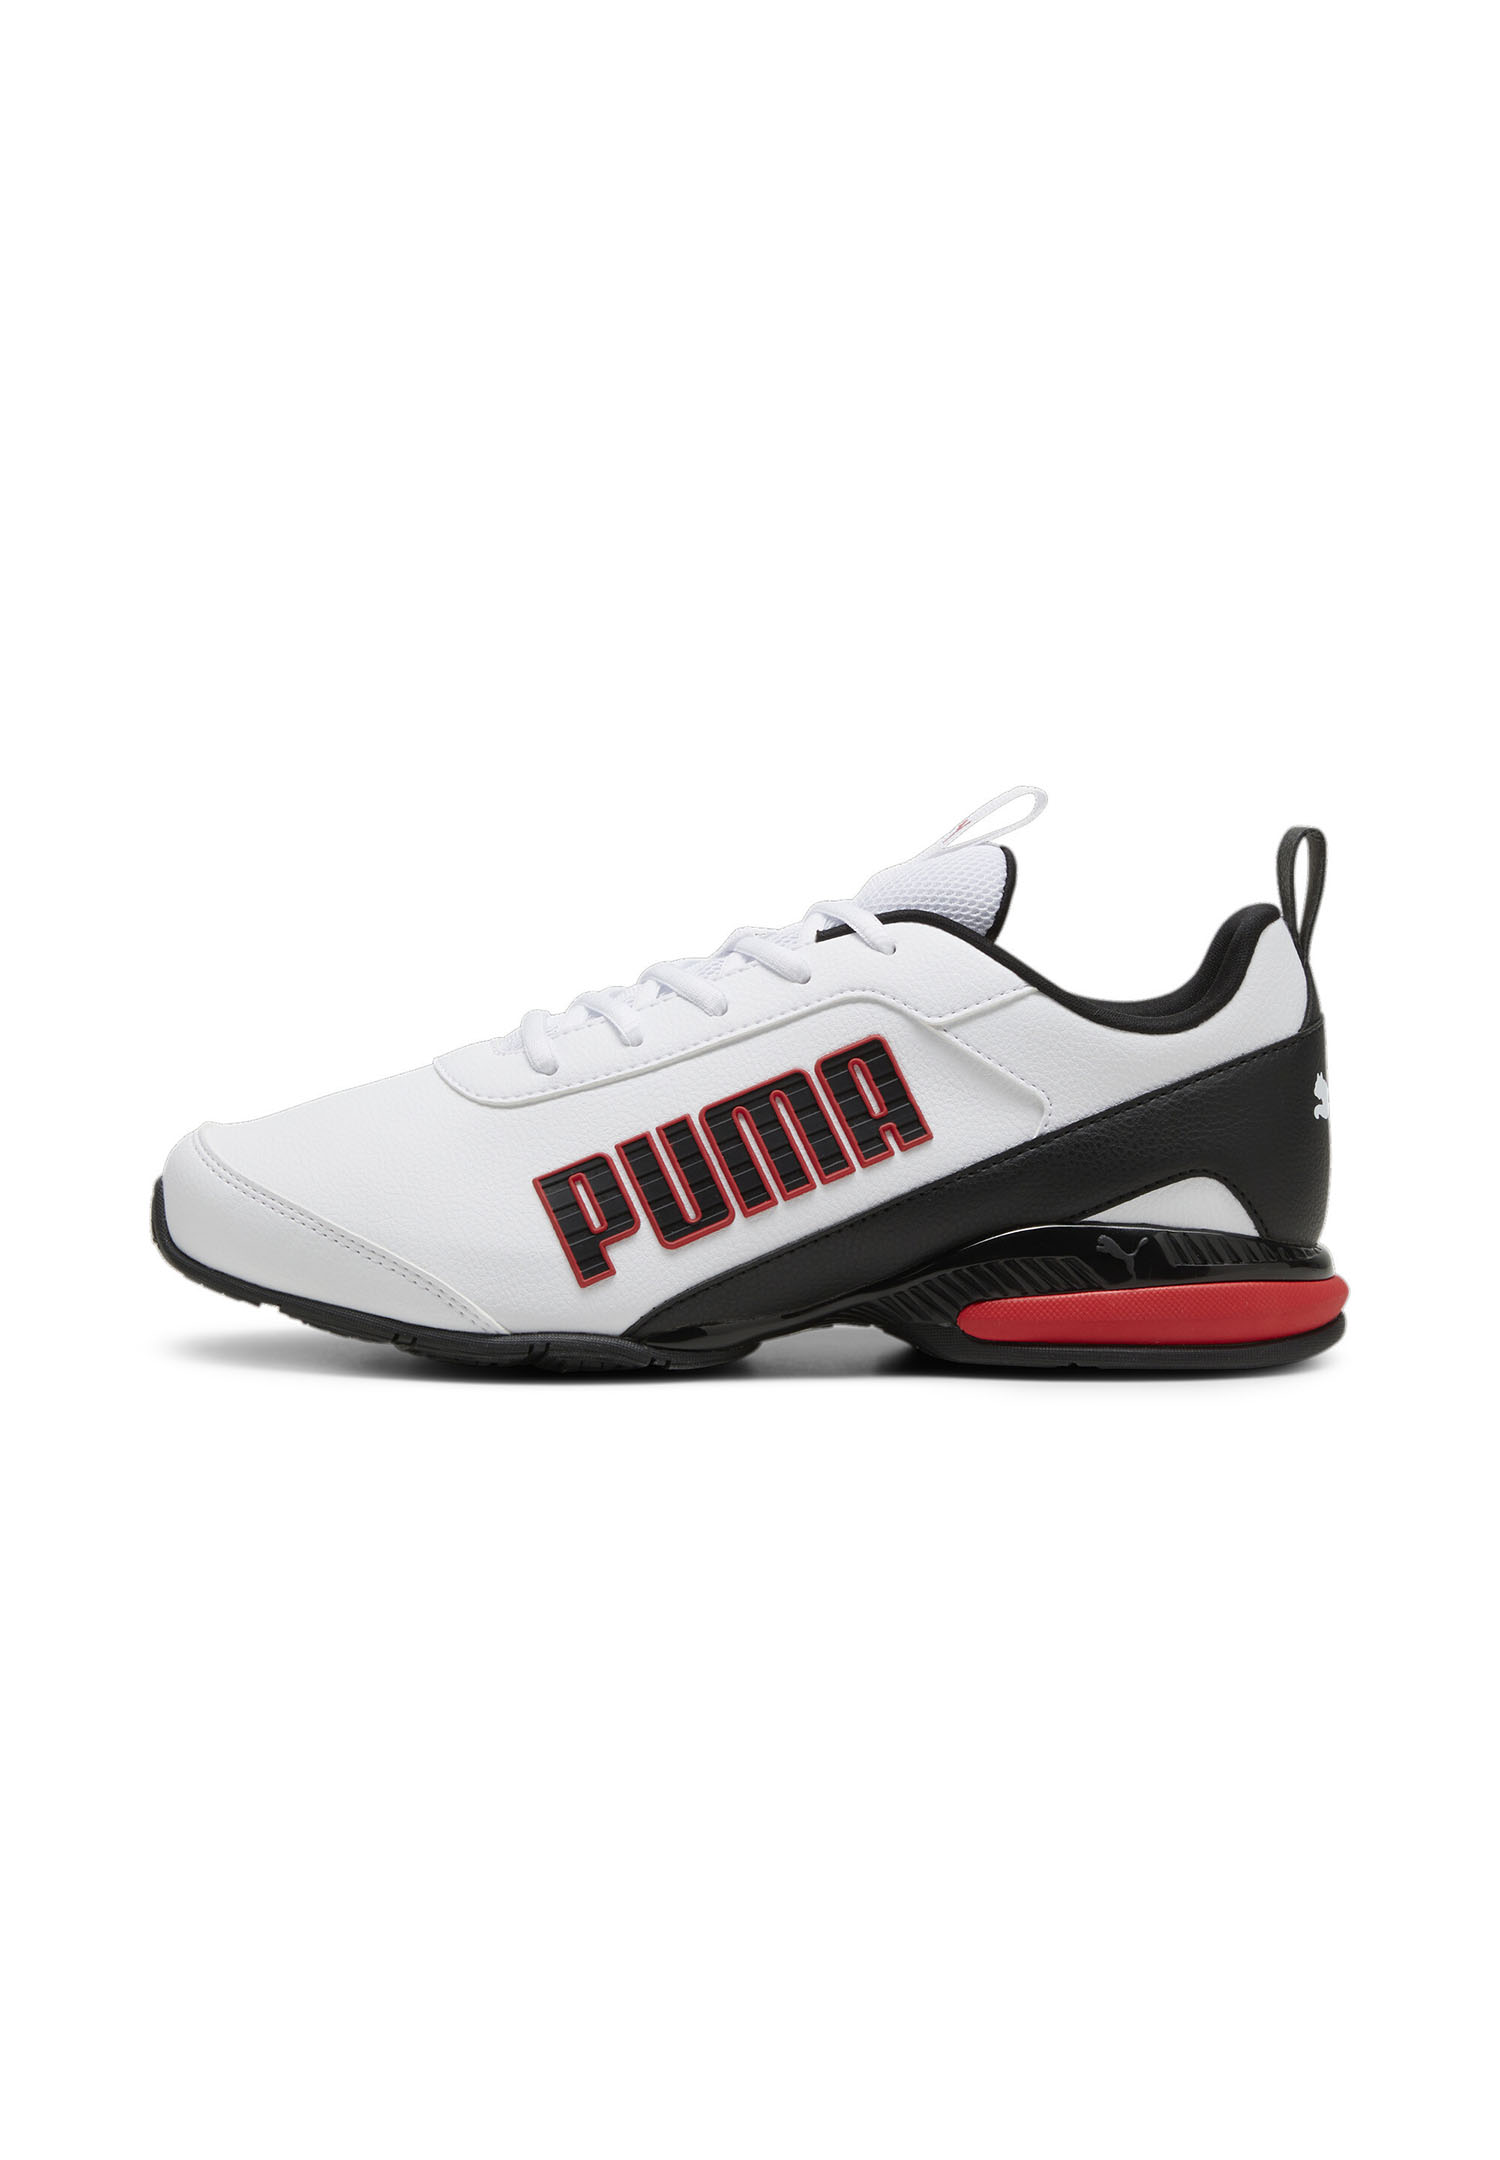 Puma Equate SL 2 Laufschuhe Herren Sneaker Schuhe 310039 02 weiss/schwarz/rot 